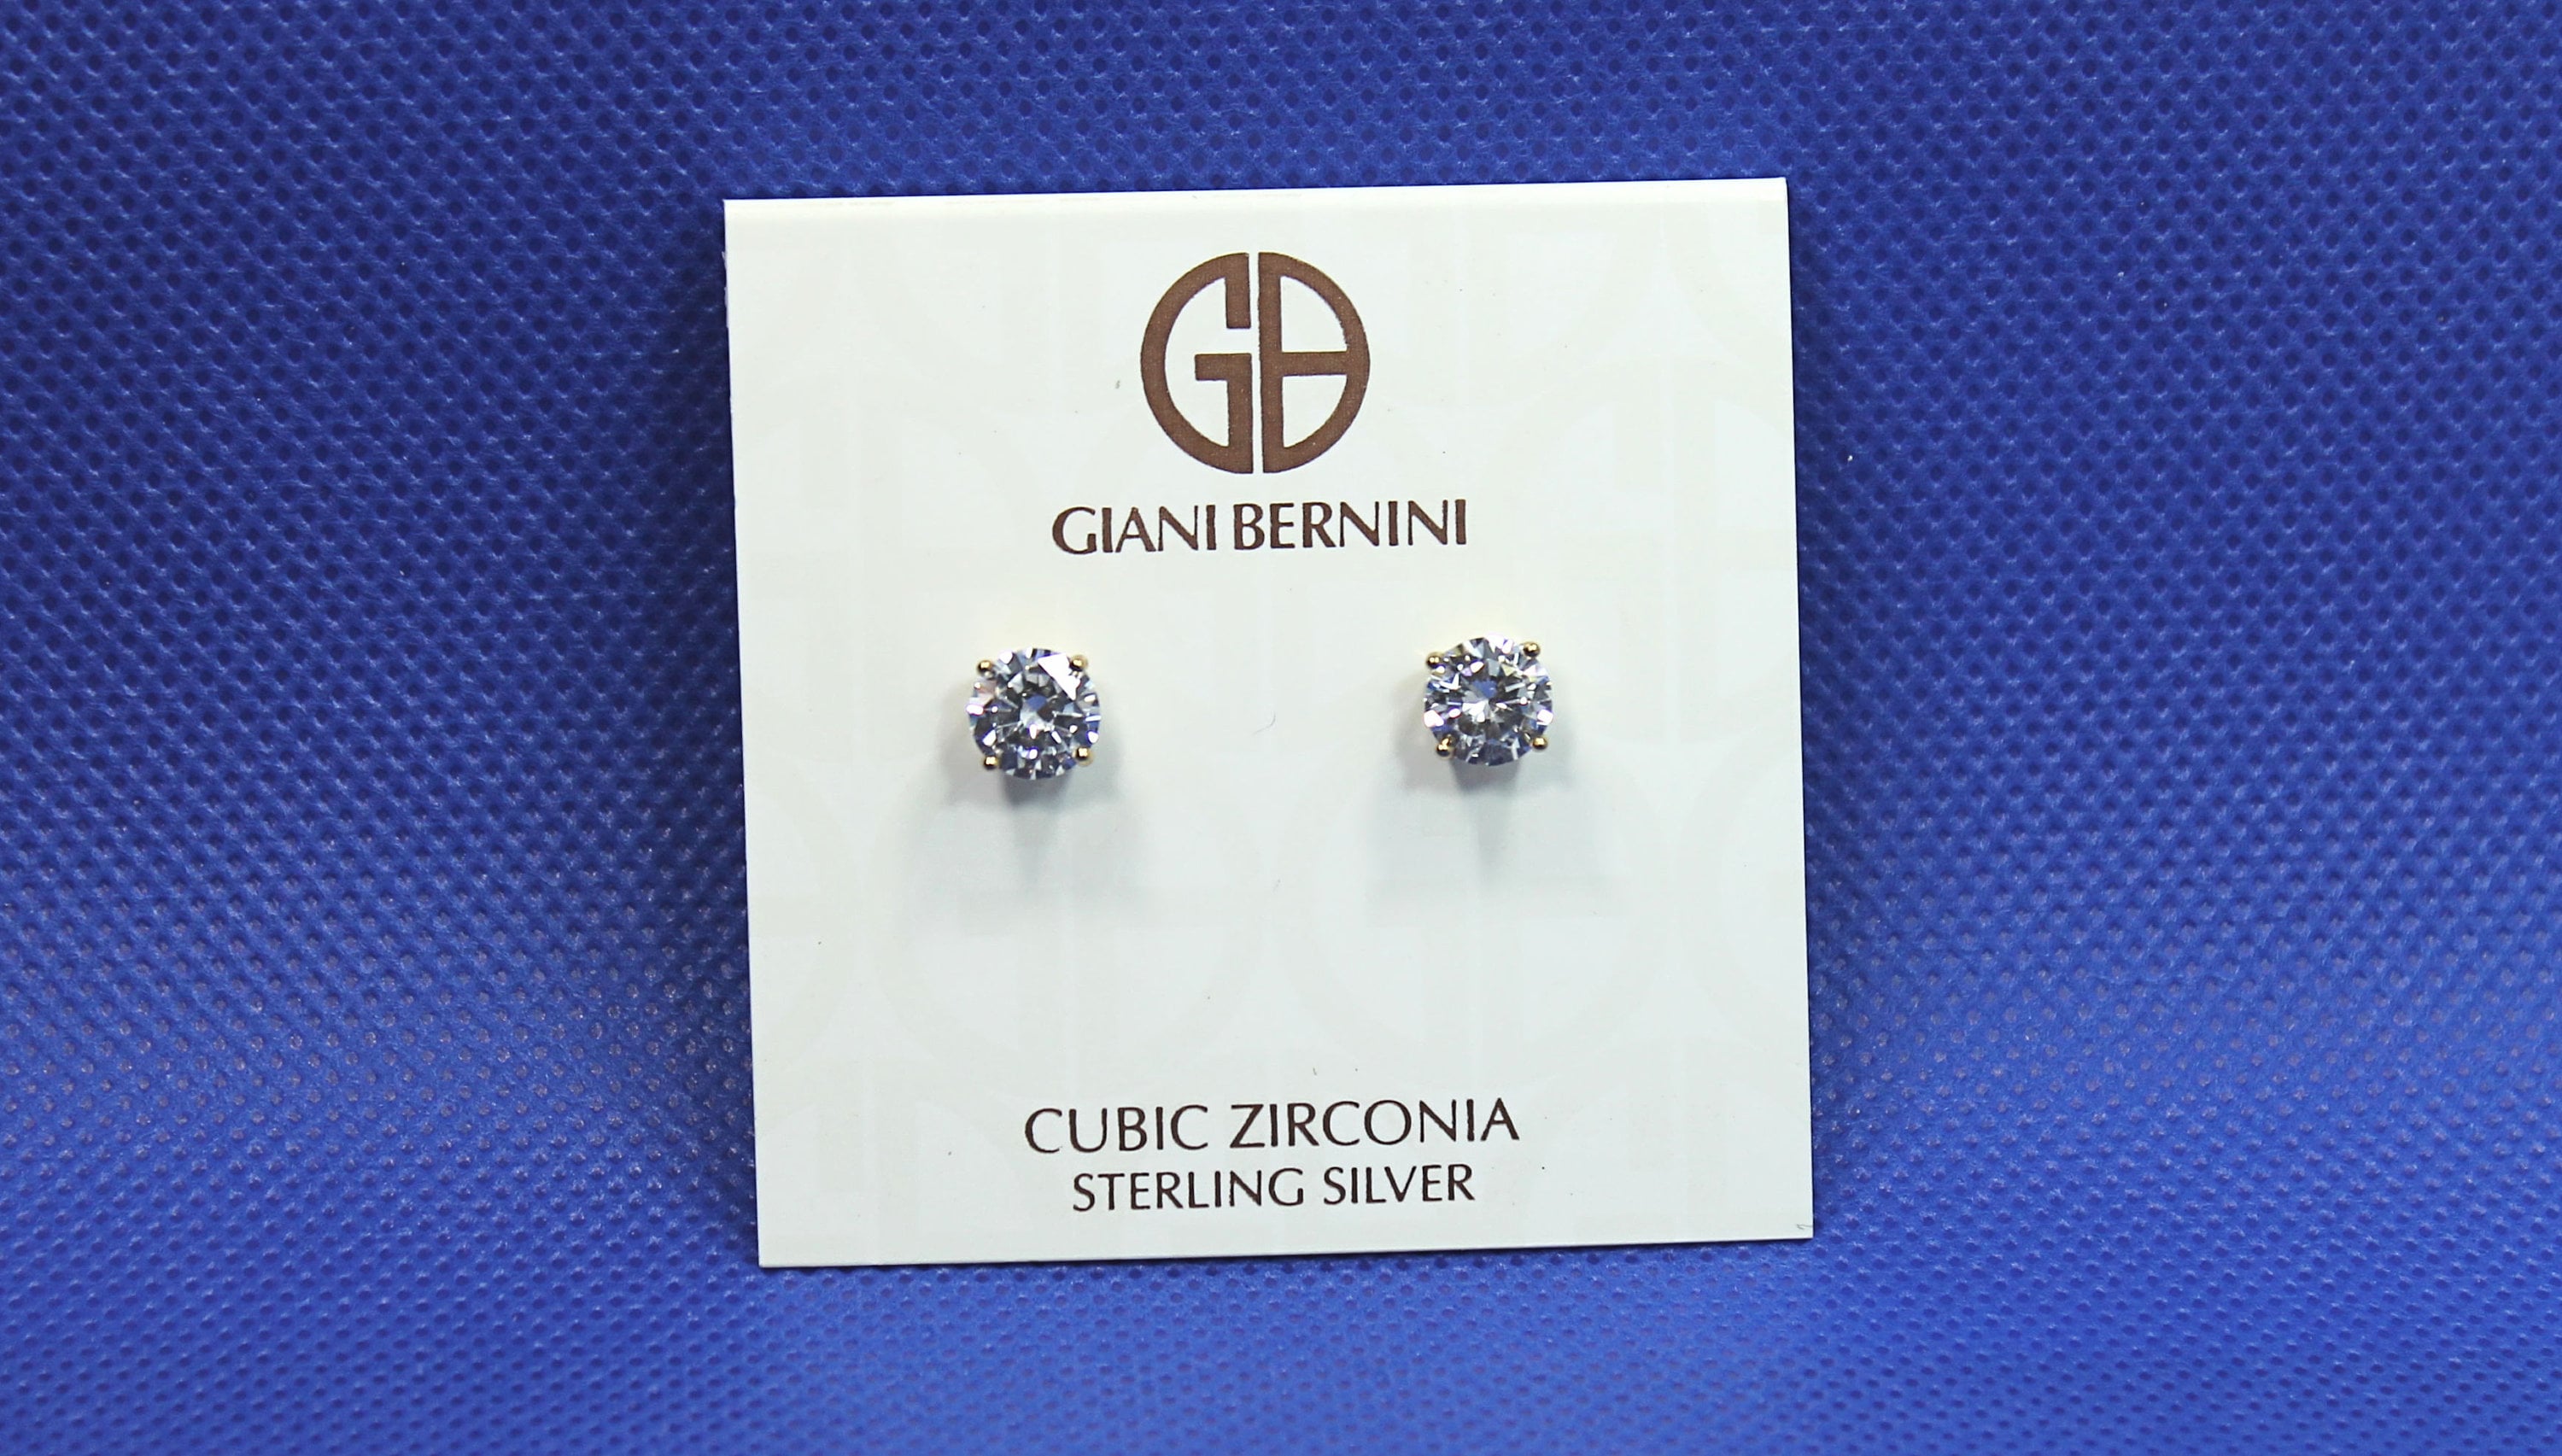 Eye Catching Pair of GIANI BERNINI 18K Y/G Sterling Silver Stud Earrings